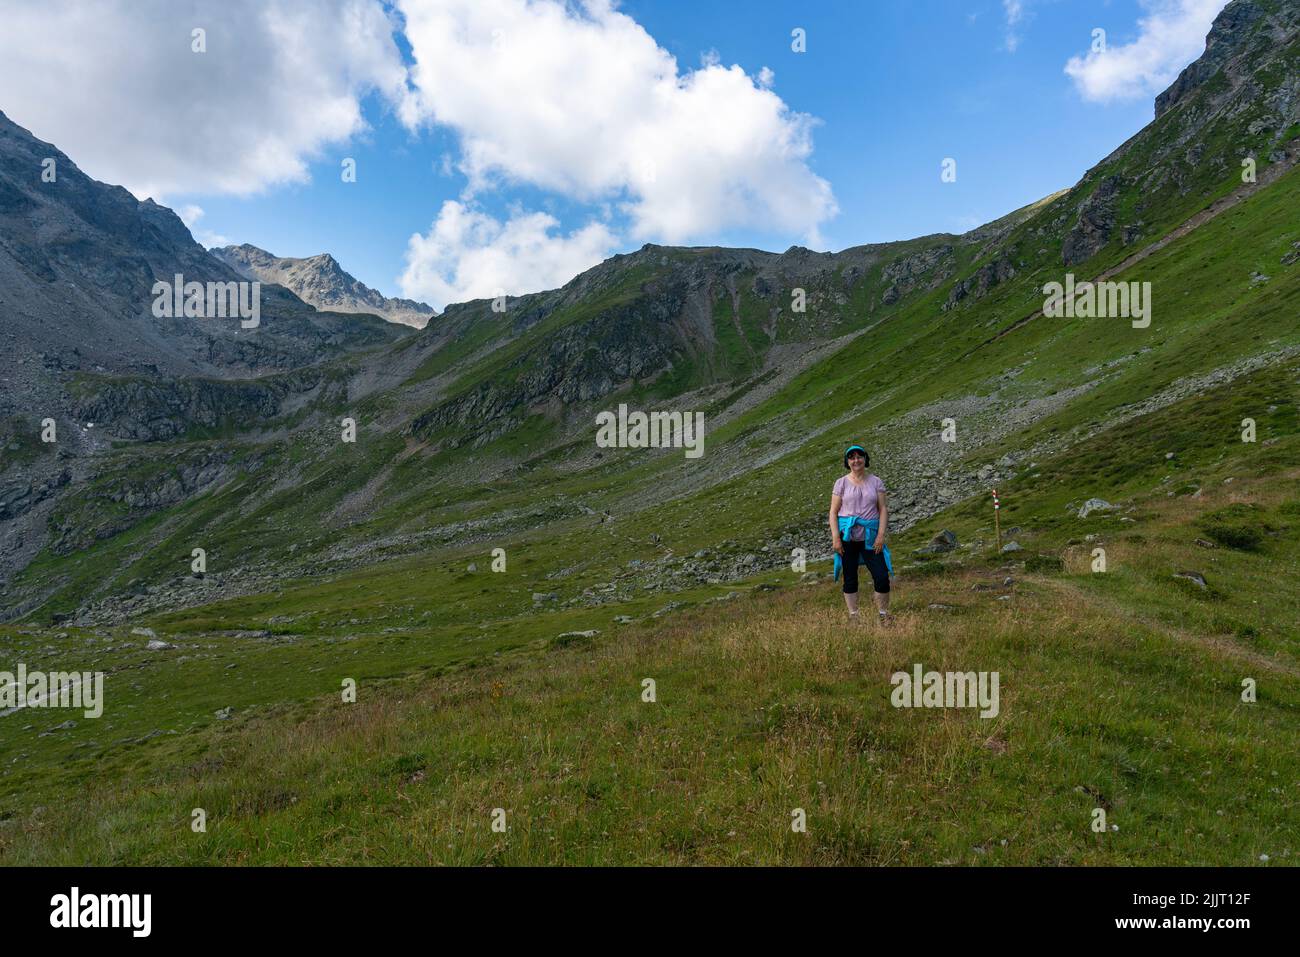 Wanderin auf den steinigen Fussweg zum Gipfel. Frau auf Wanderwegen Gargellen, Montafon, Österreich. steiniger schmaler Weg am steilen Abhang Stock Photo